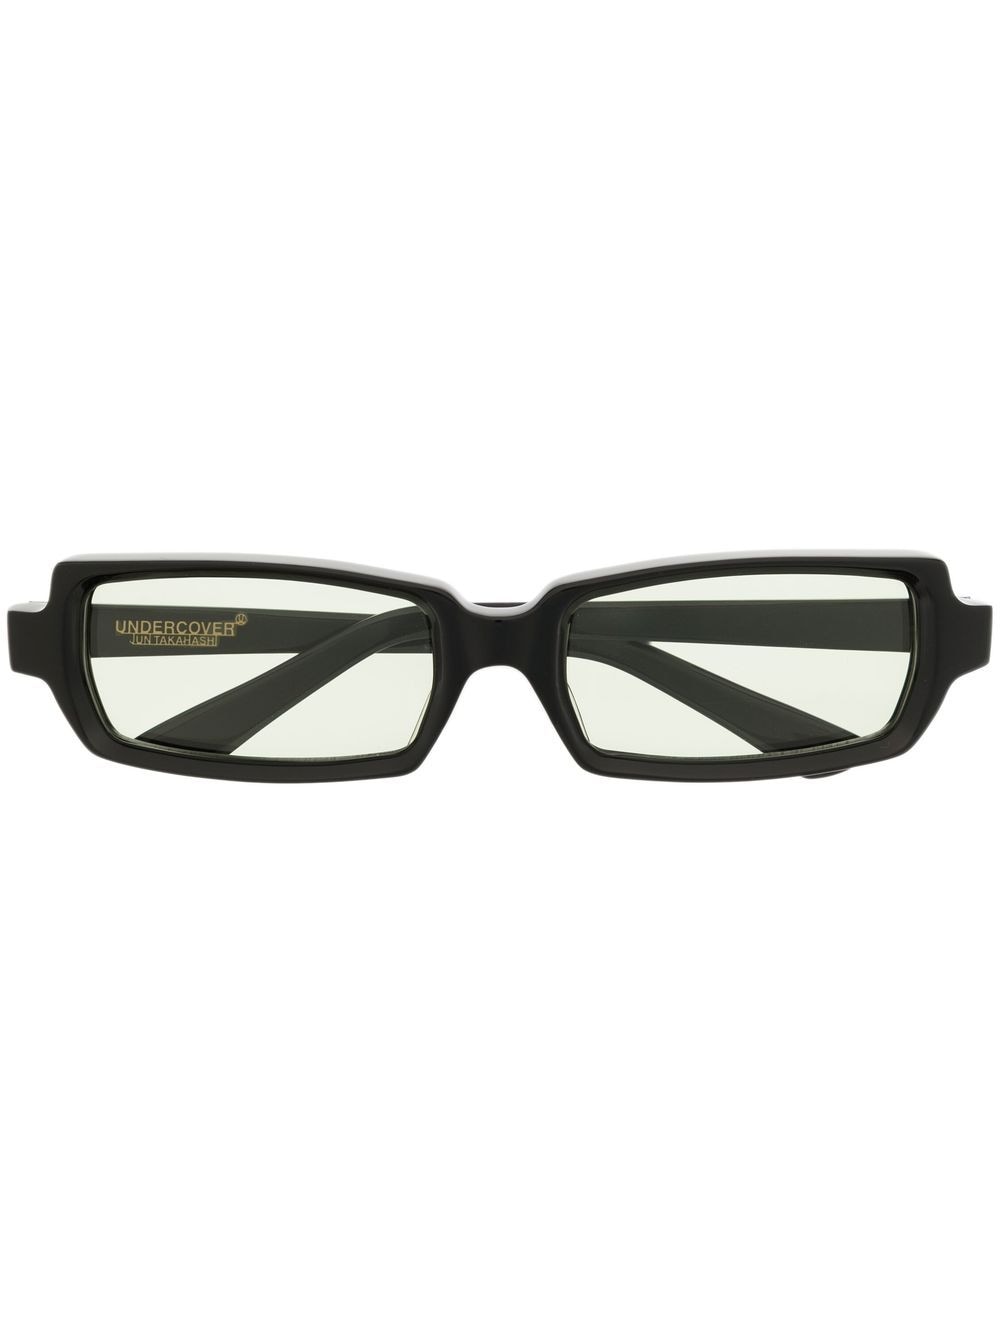 Undercover UC1B4E01 rectangle-frame sunglasses - Black von Undercover